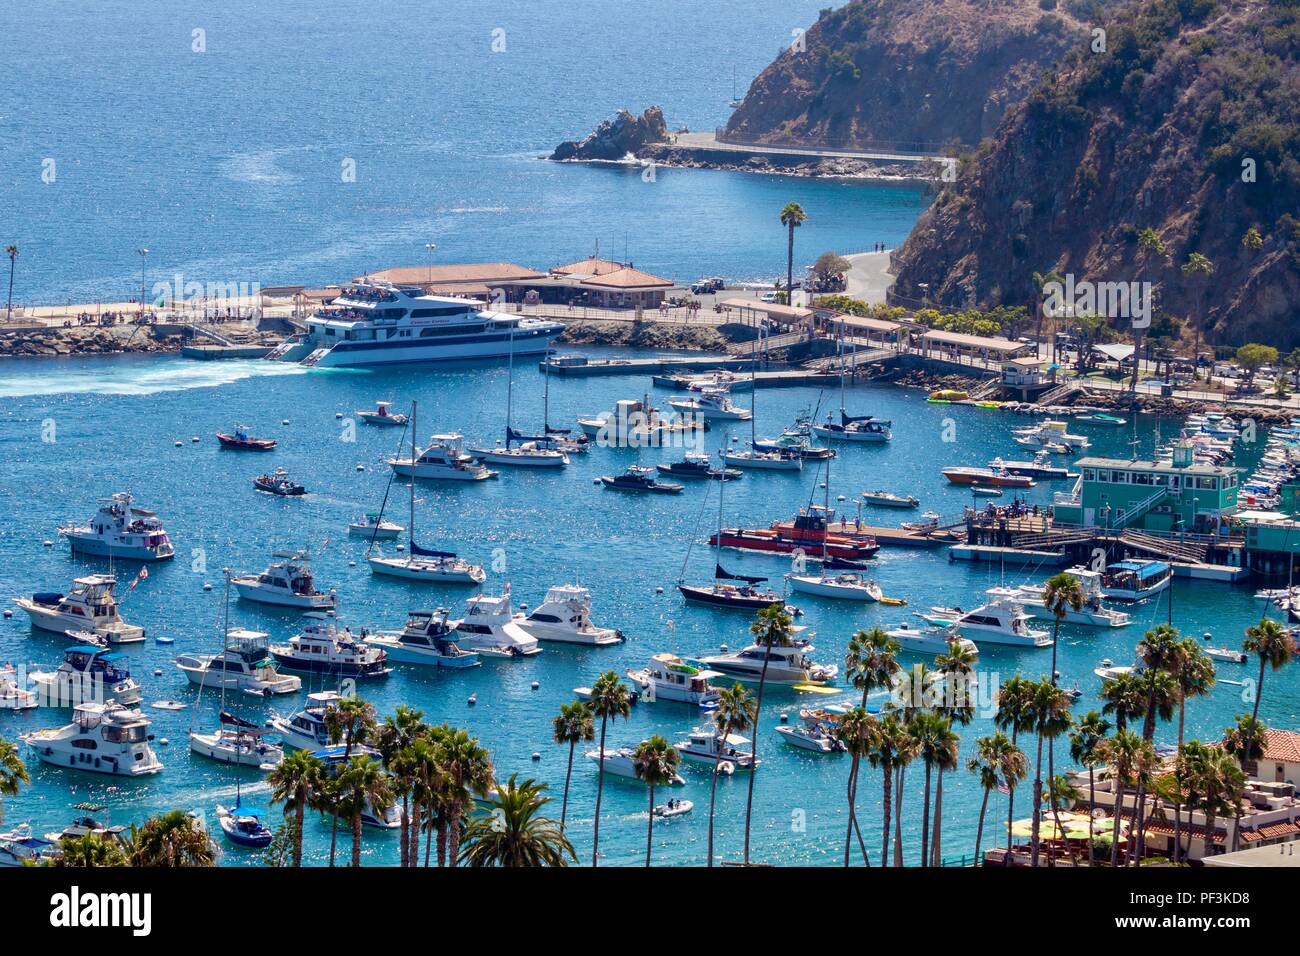 Boats in the Santa Catalina Island Harbor Stock Photo